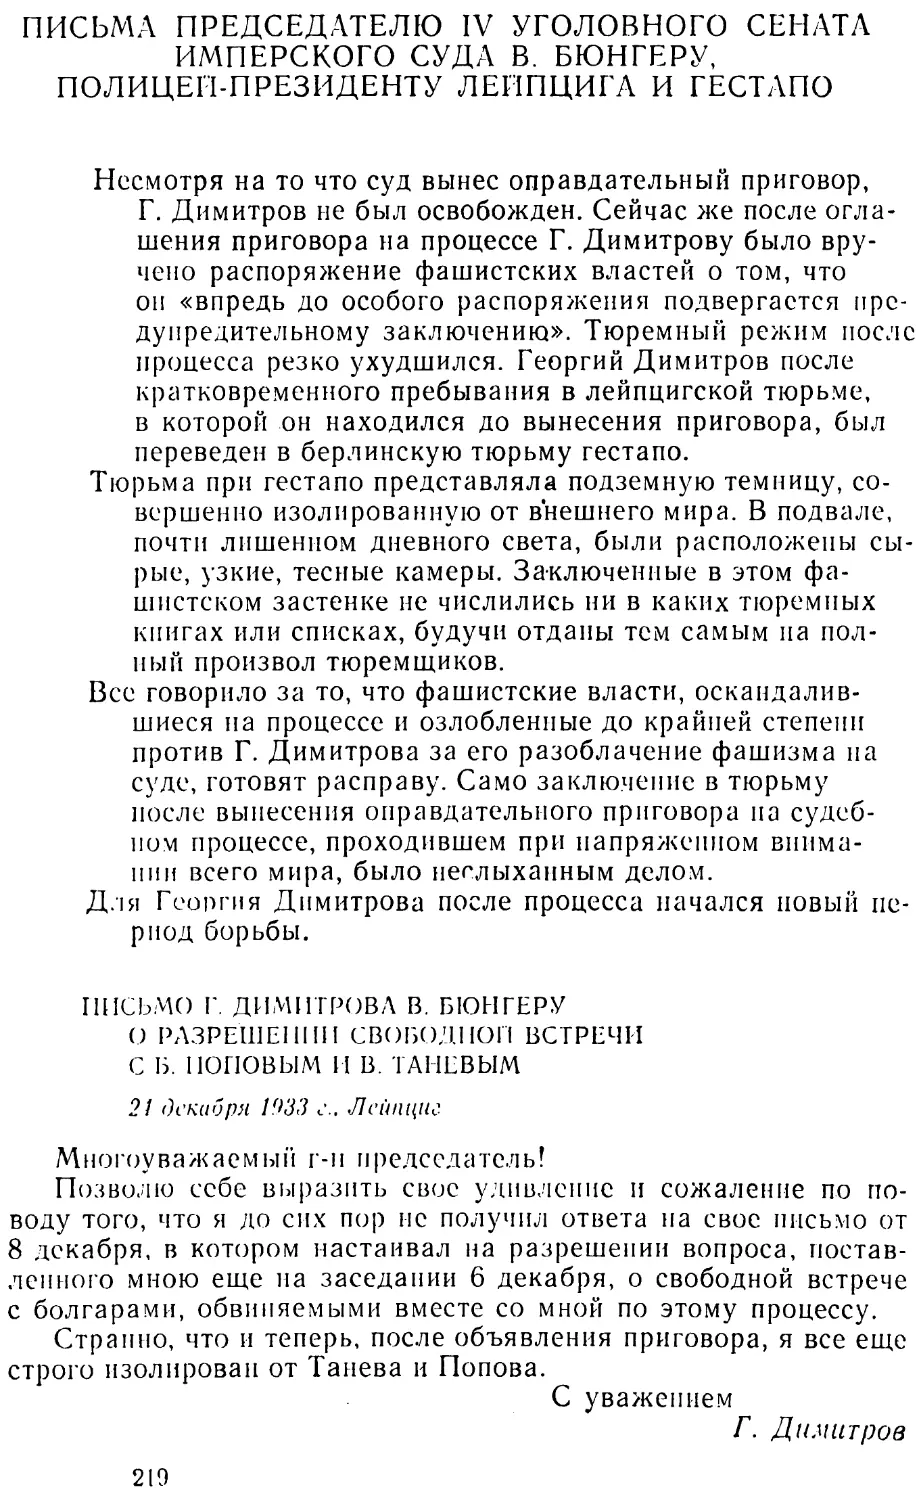 Письмо Г. Димитрова В. Бюнгеру о разрешении свободной встречи с Б. Поповым и В. Тапсвым. 24 декабря 1933 г